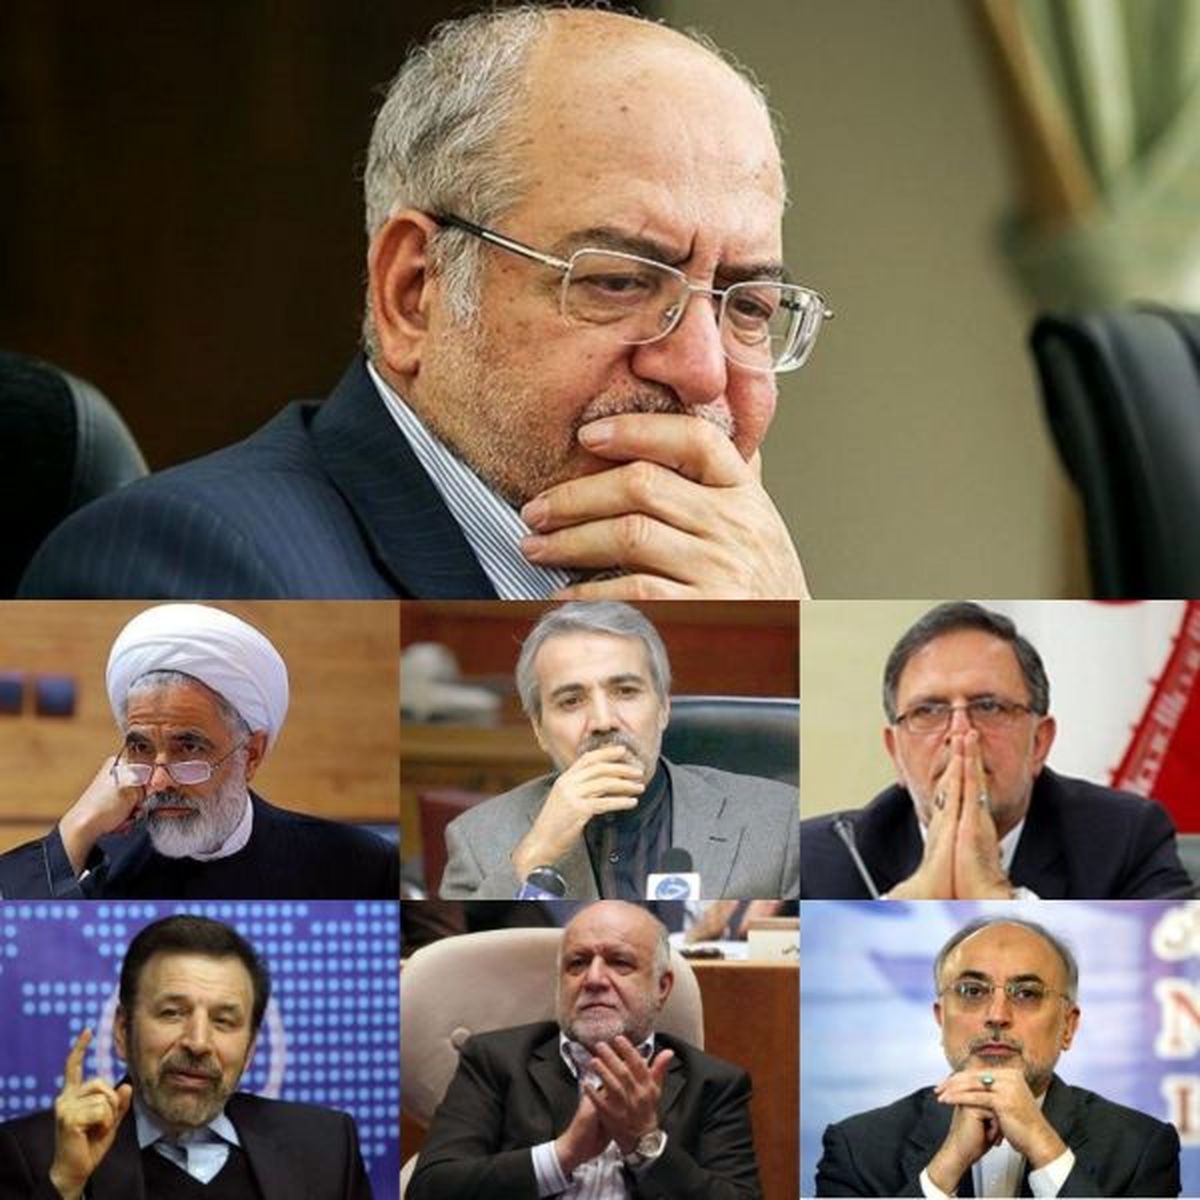 وعده روحانی برای جوانتر شدن کابینه / کدام وزرای کهنسال با دولت وداع می کنند؟